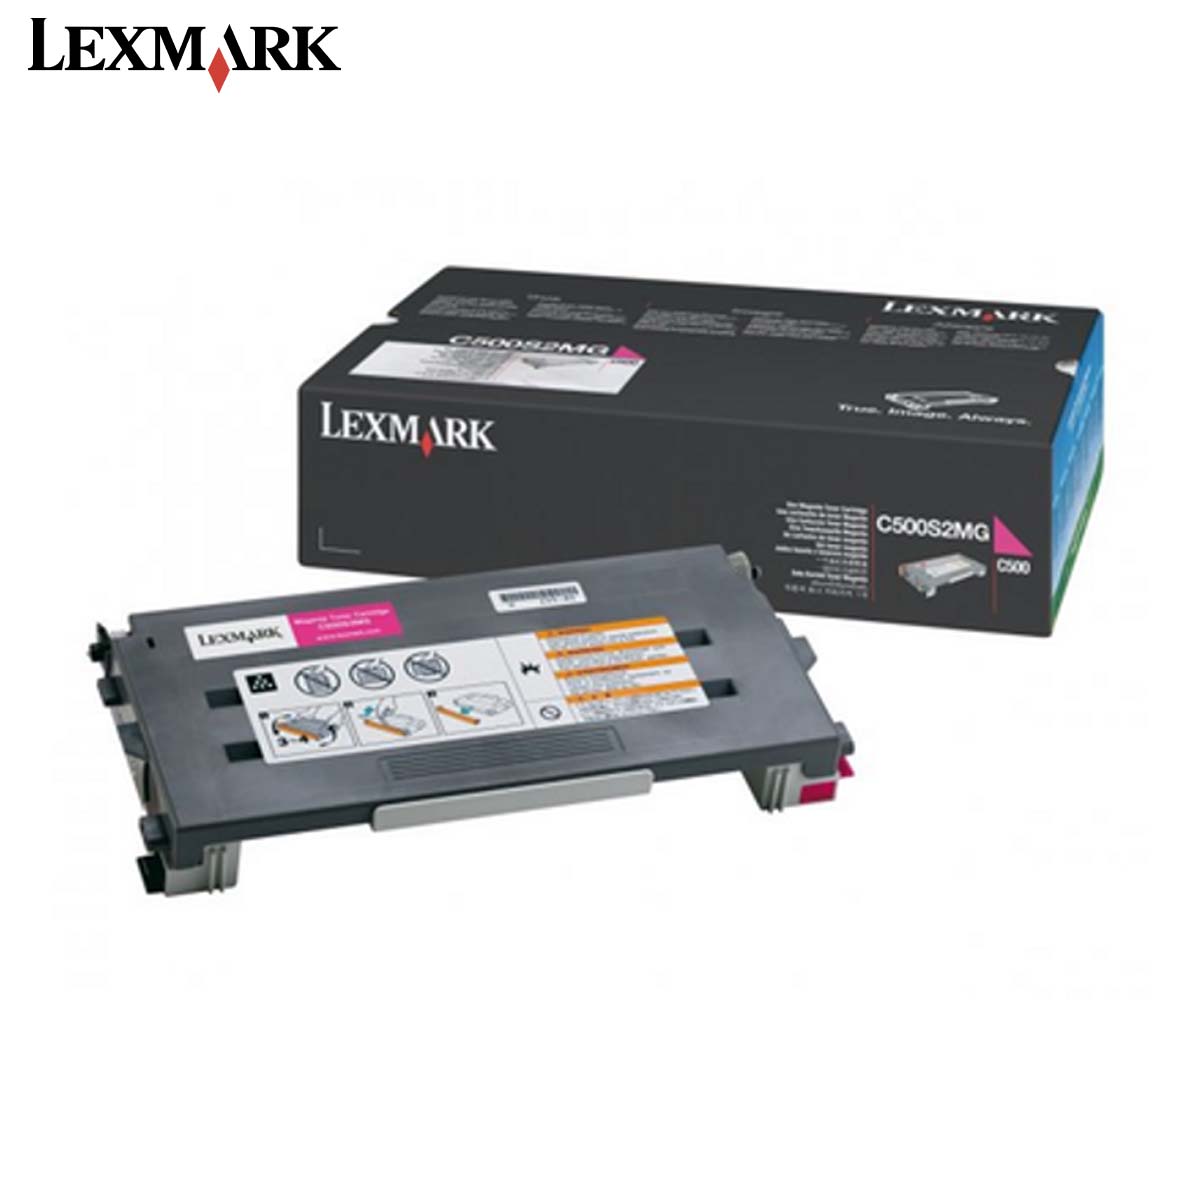 Lexmark Toner  C500 (Original)